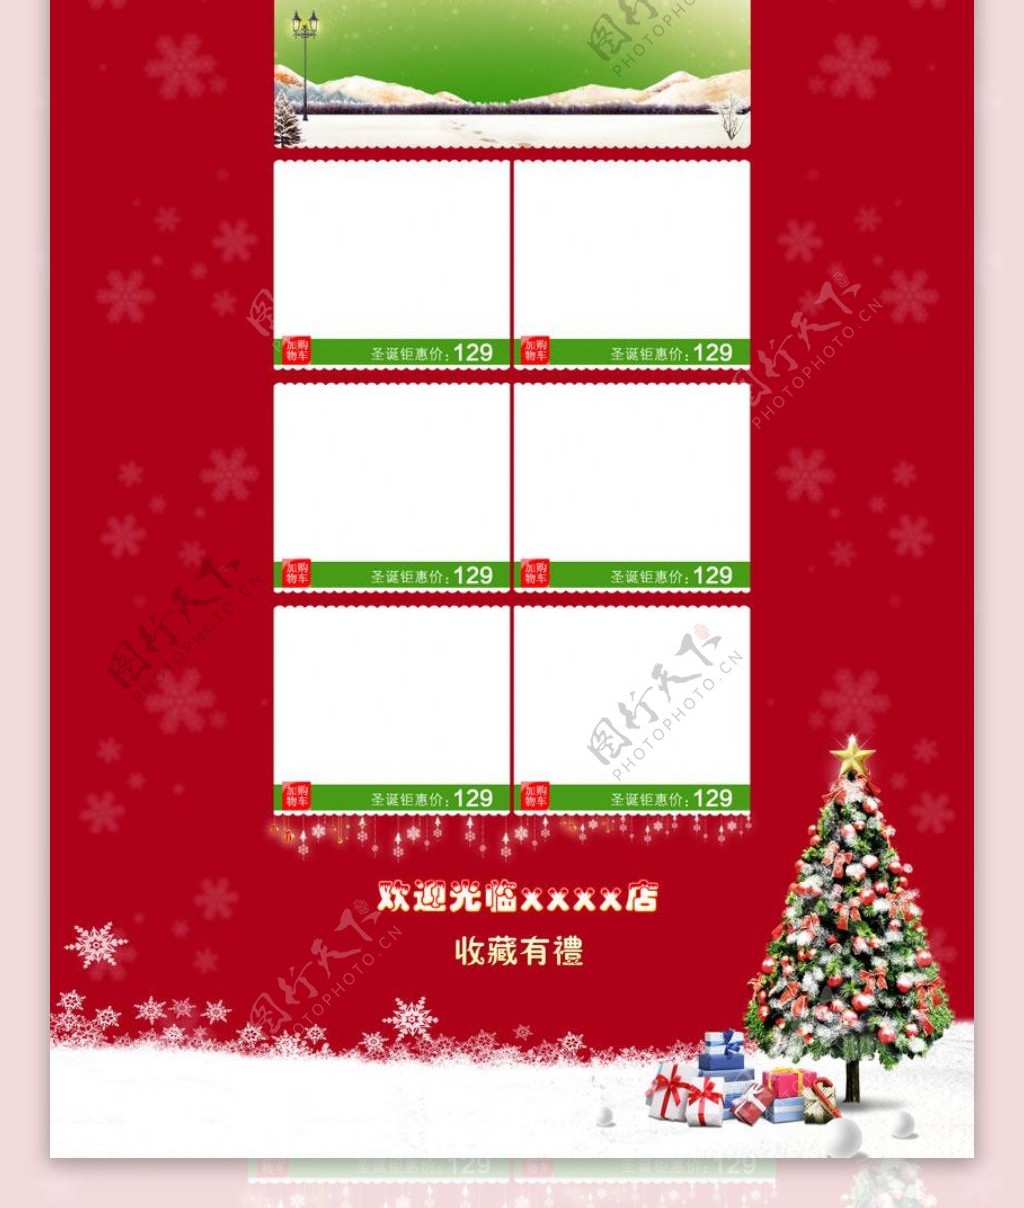 淘宝圣诞节促销活动页面设计PSD素材